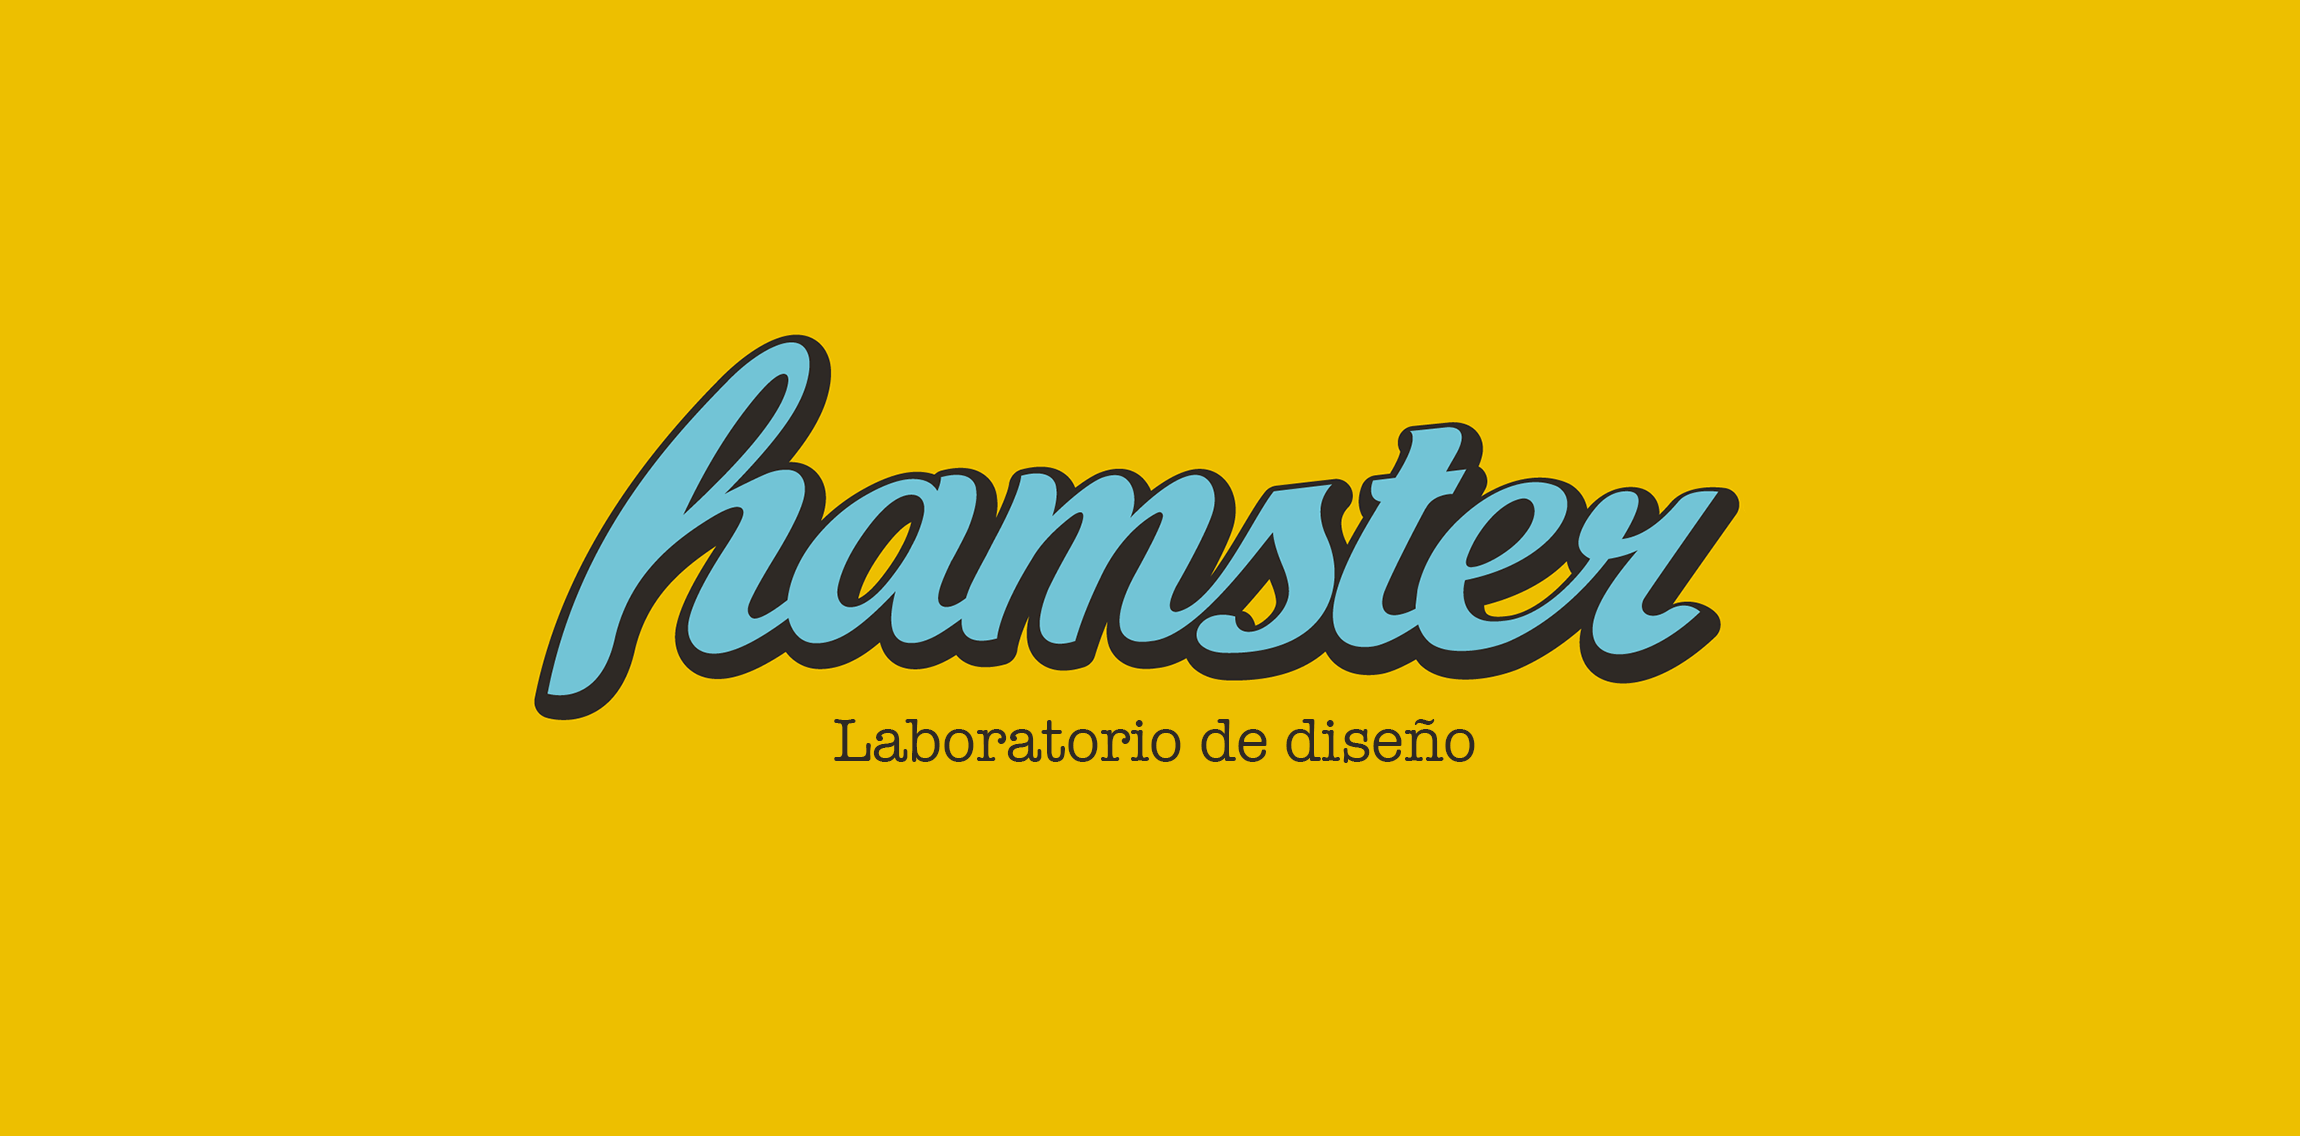 hamster